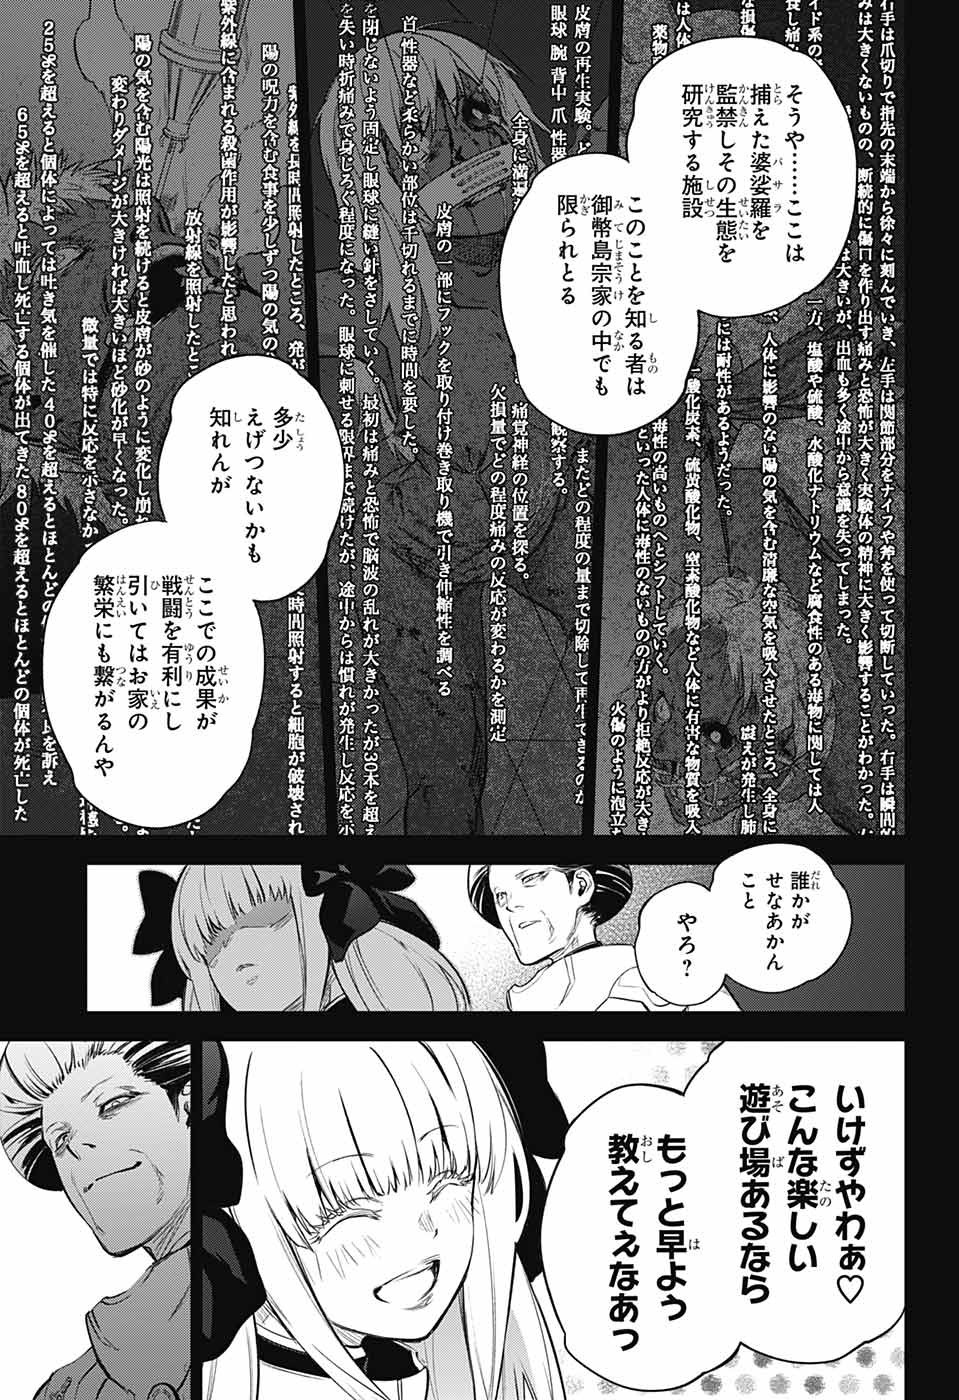 Sousei no Onmyouji - Chapter 110 - Page 3